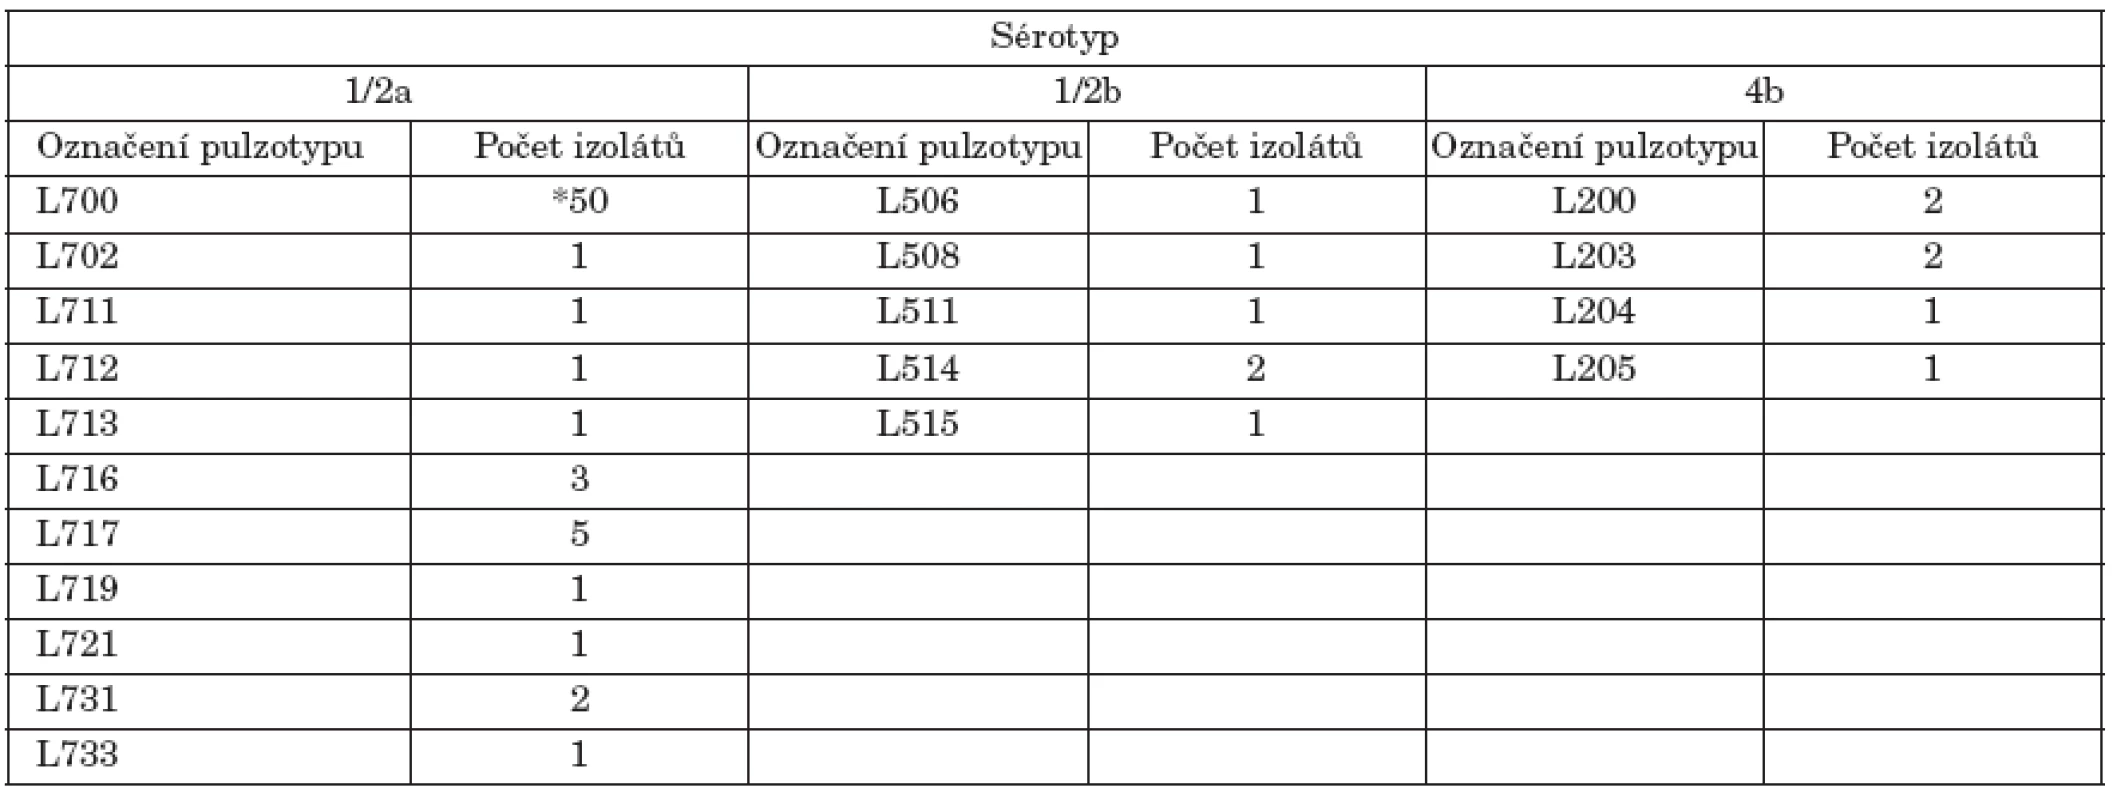 Označení a počet pulzotypů L. monocytogenes podle sérotypu
Table 2. L. monocytogenes pulsotypes and numbers of isolates by serotype